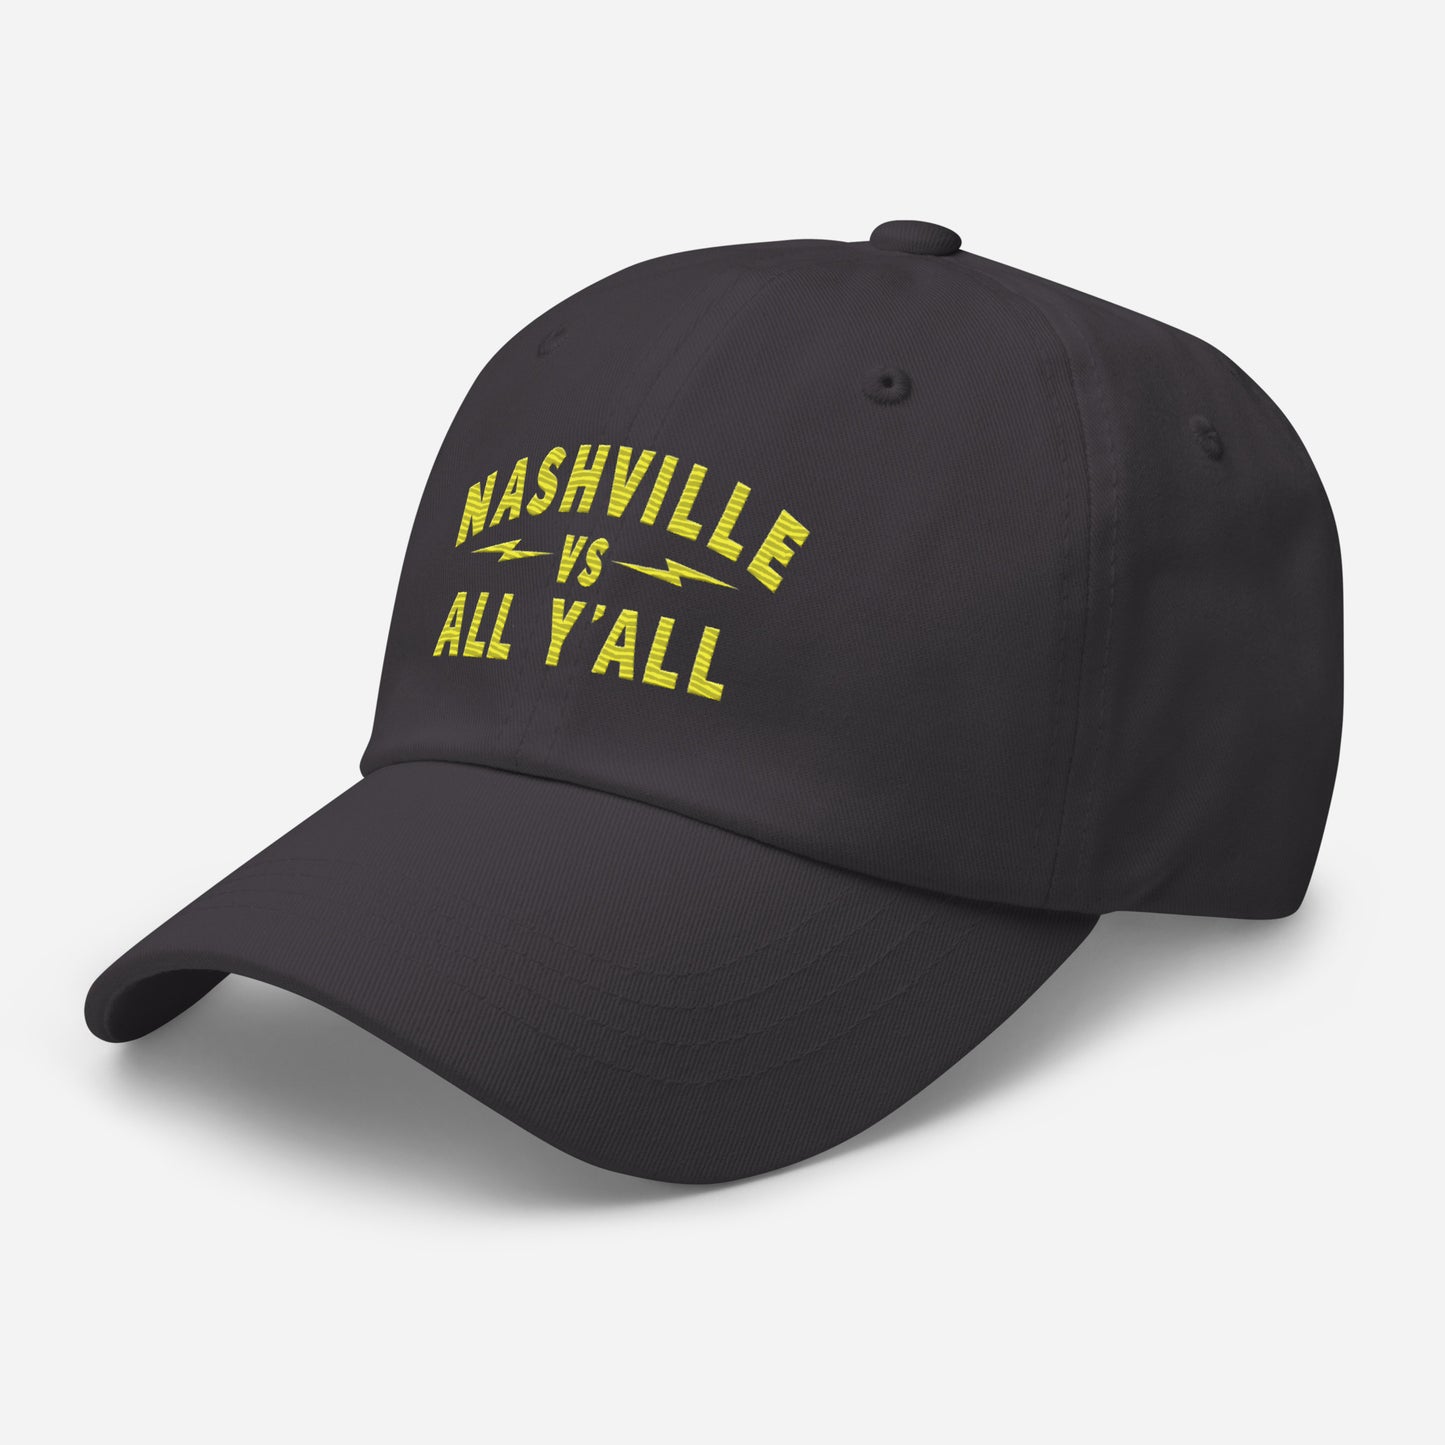 Nashville Vs Curved text Dad hat